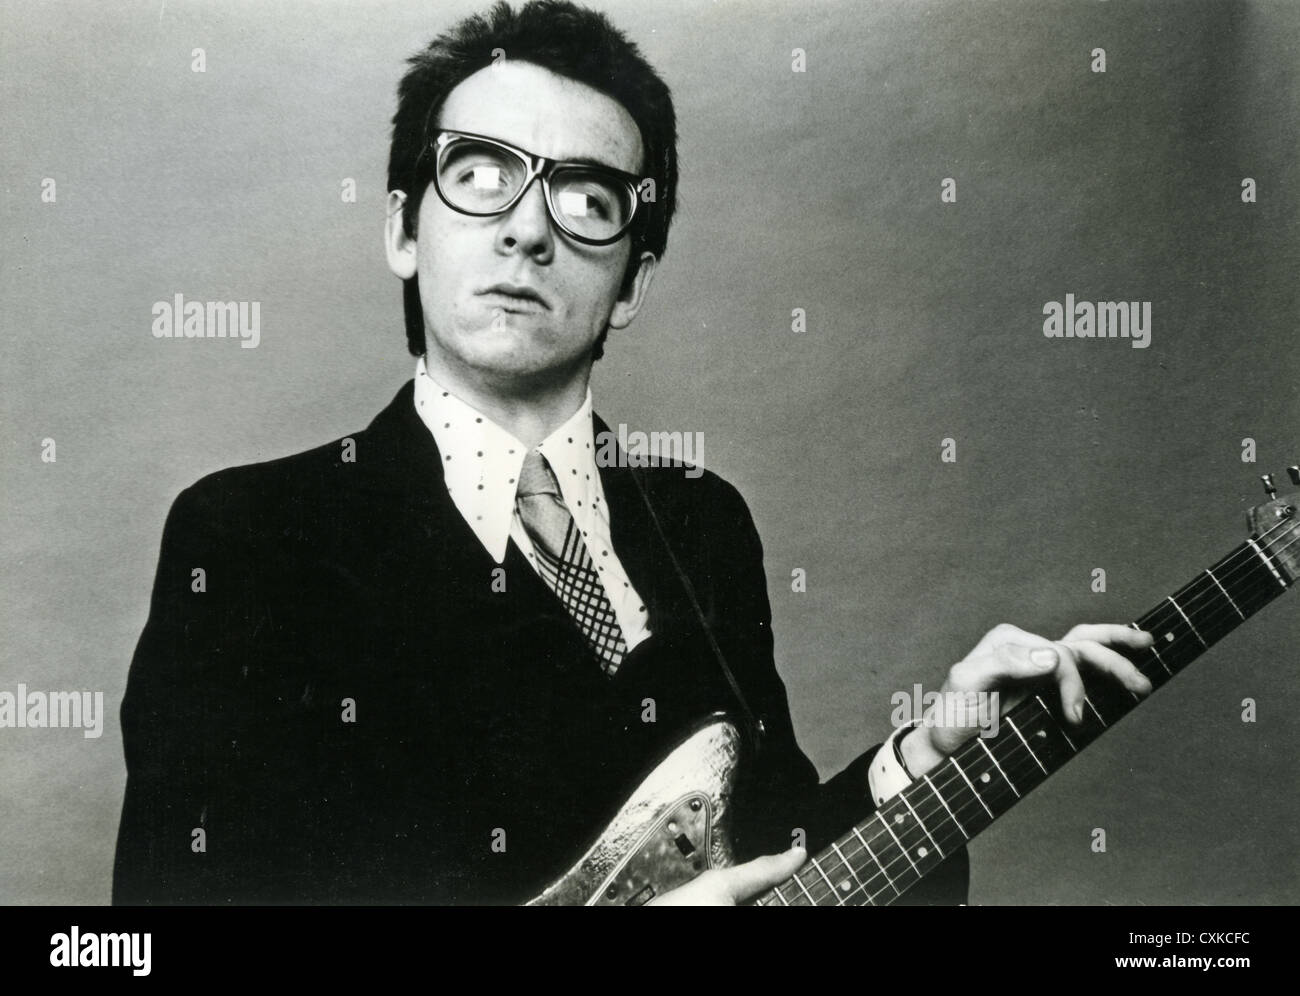 ELVIS COSTELLO foto promozionale del Regno Unito musicista rock circa 1980 Foto Stock